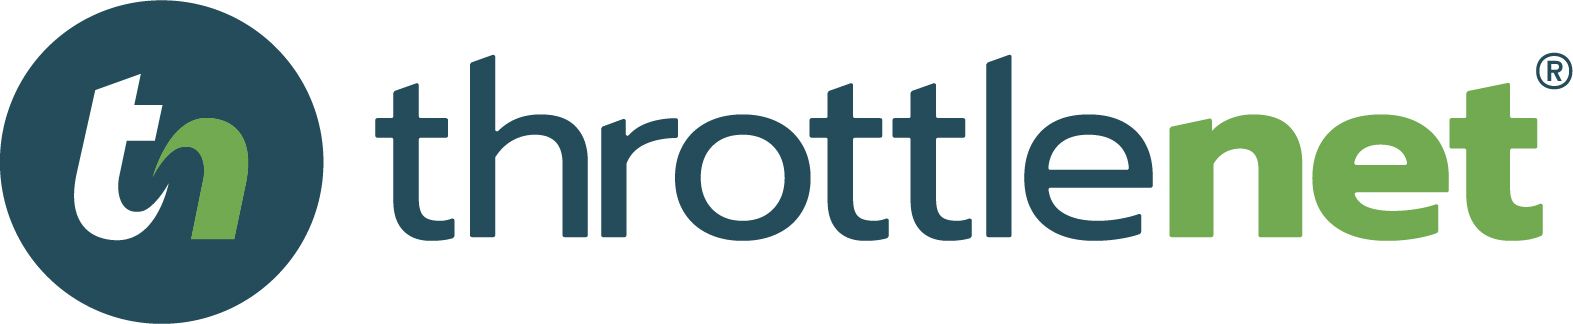 ThrottleNet #1 IT Firm